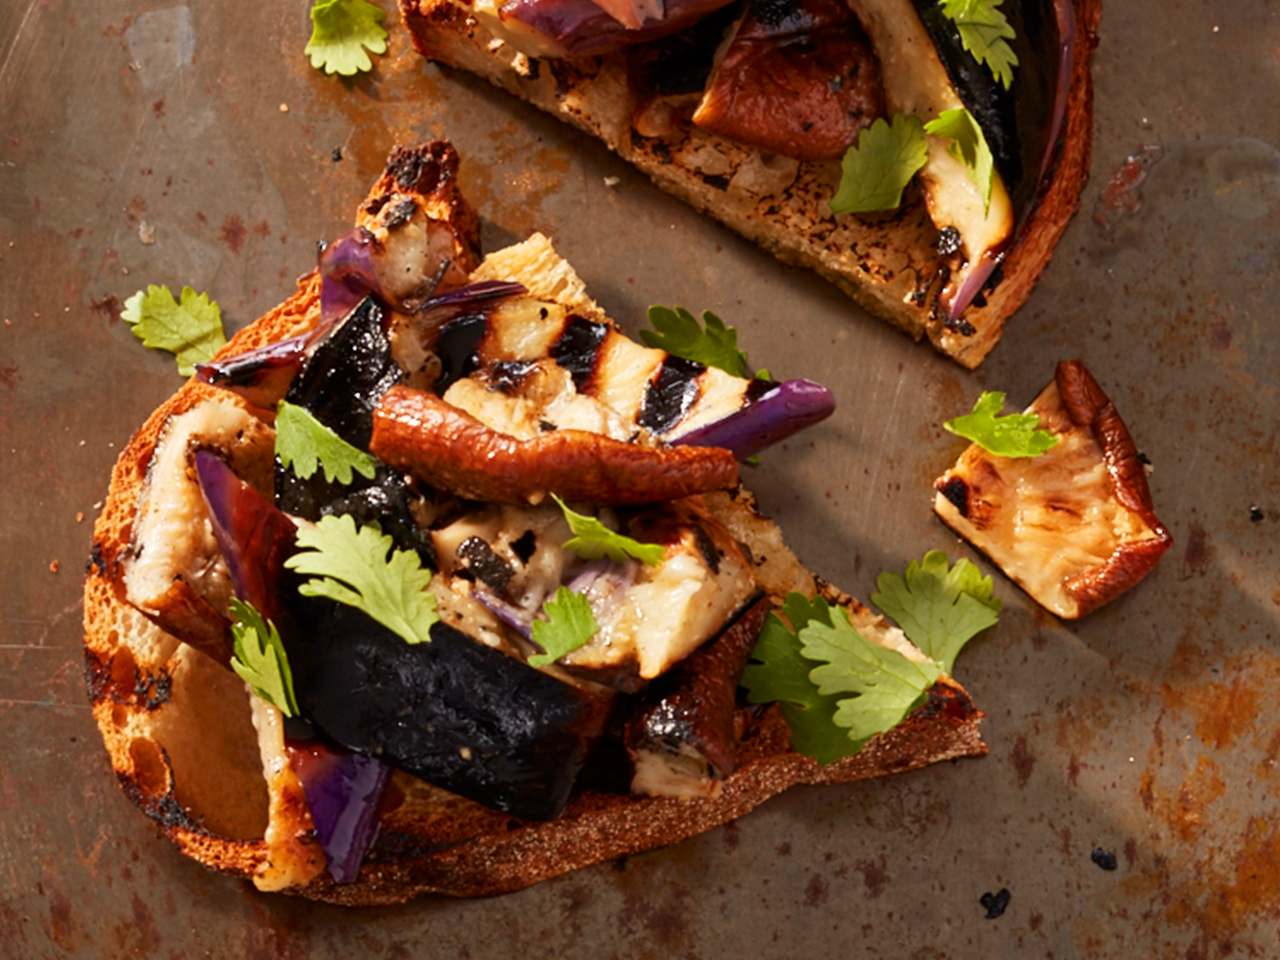 Ways to use eggplant: Charred eggplant and shiitake mushroom bruschetta